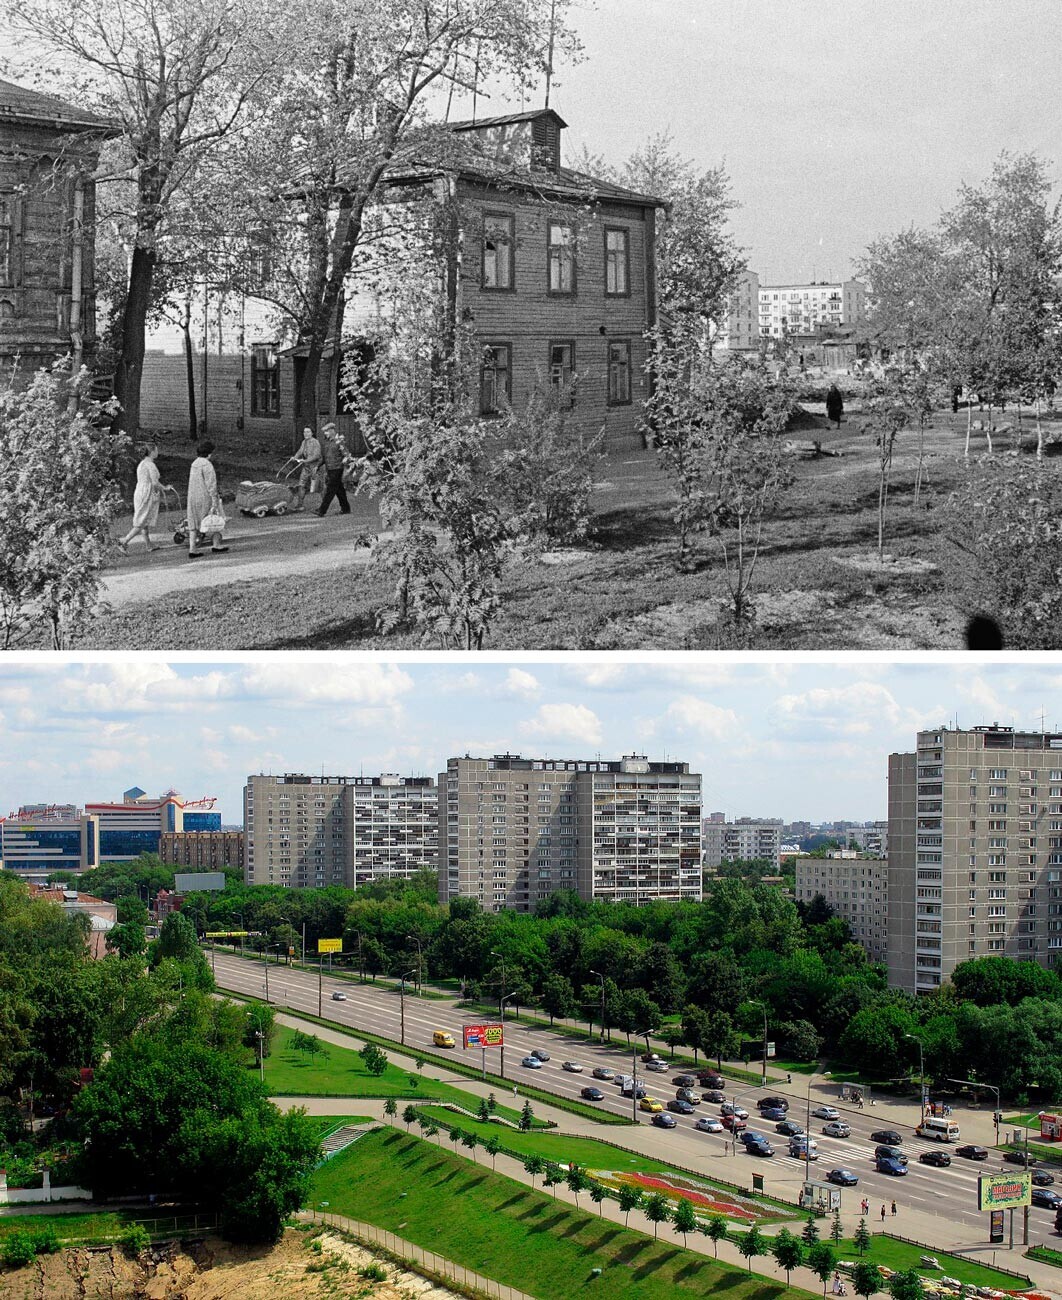 Levo: Stare hiše v Čerkizovu, 1964. Desno: Ulica Bolšaja Čerkizovskaja, 2009.
